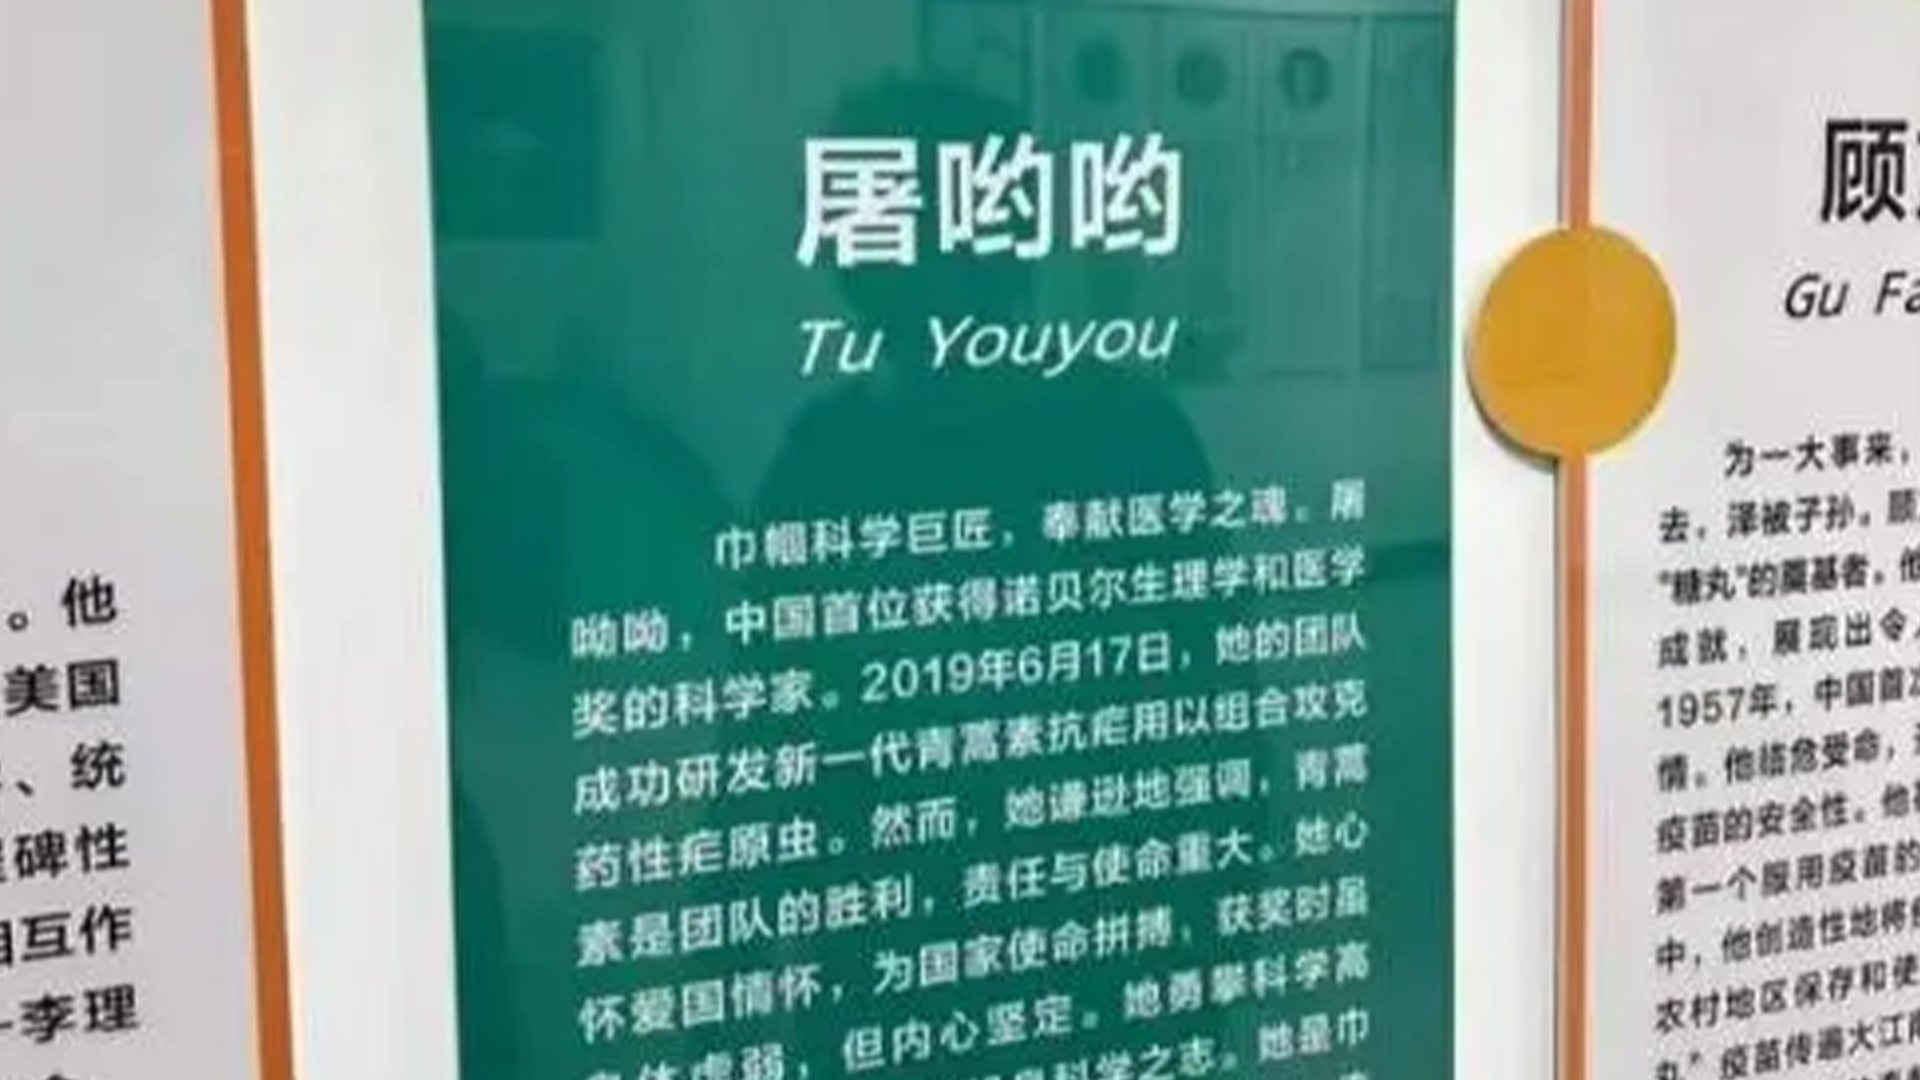 海南大学宣传海报将屠呦呦写成“屠哟哟”